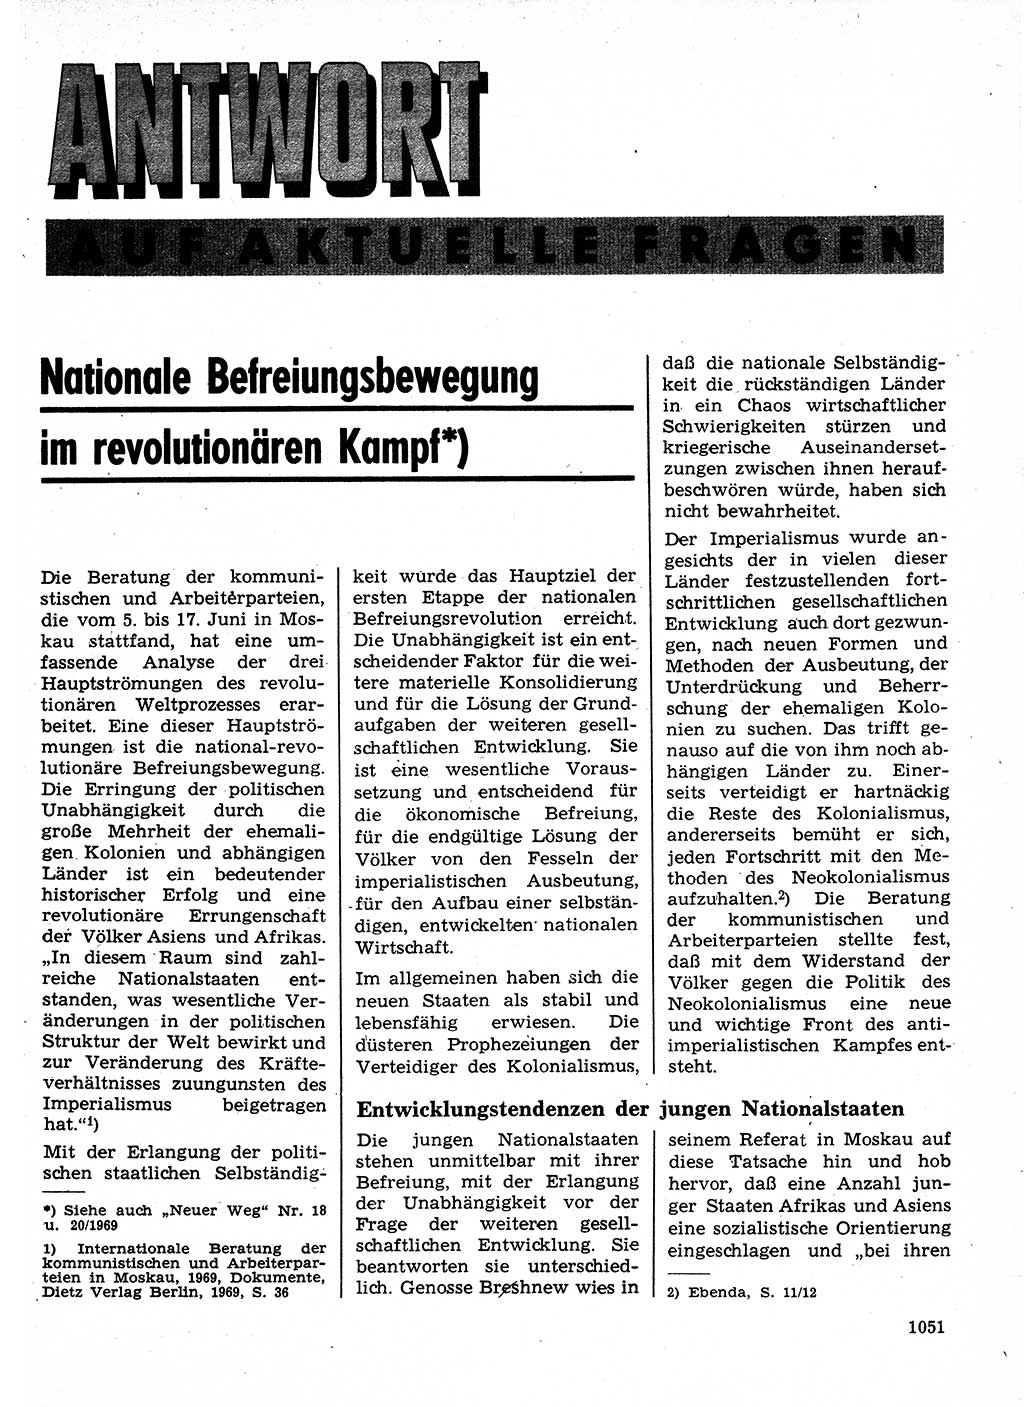 Neuer Weg (NW), Organ des Zentralkomitees (ZK) der SED (Sozialistische Einheitspartei Deutschlands) für Fragen des Parteilebens, 24. Jahrgang [Deutsche Demokratische Republik (DDR)] 1969, Seite 1051 (NW ZK SED DDR 1969, S. 1051)